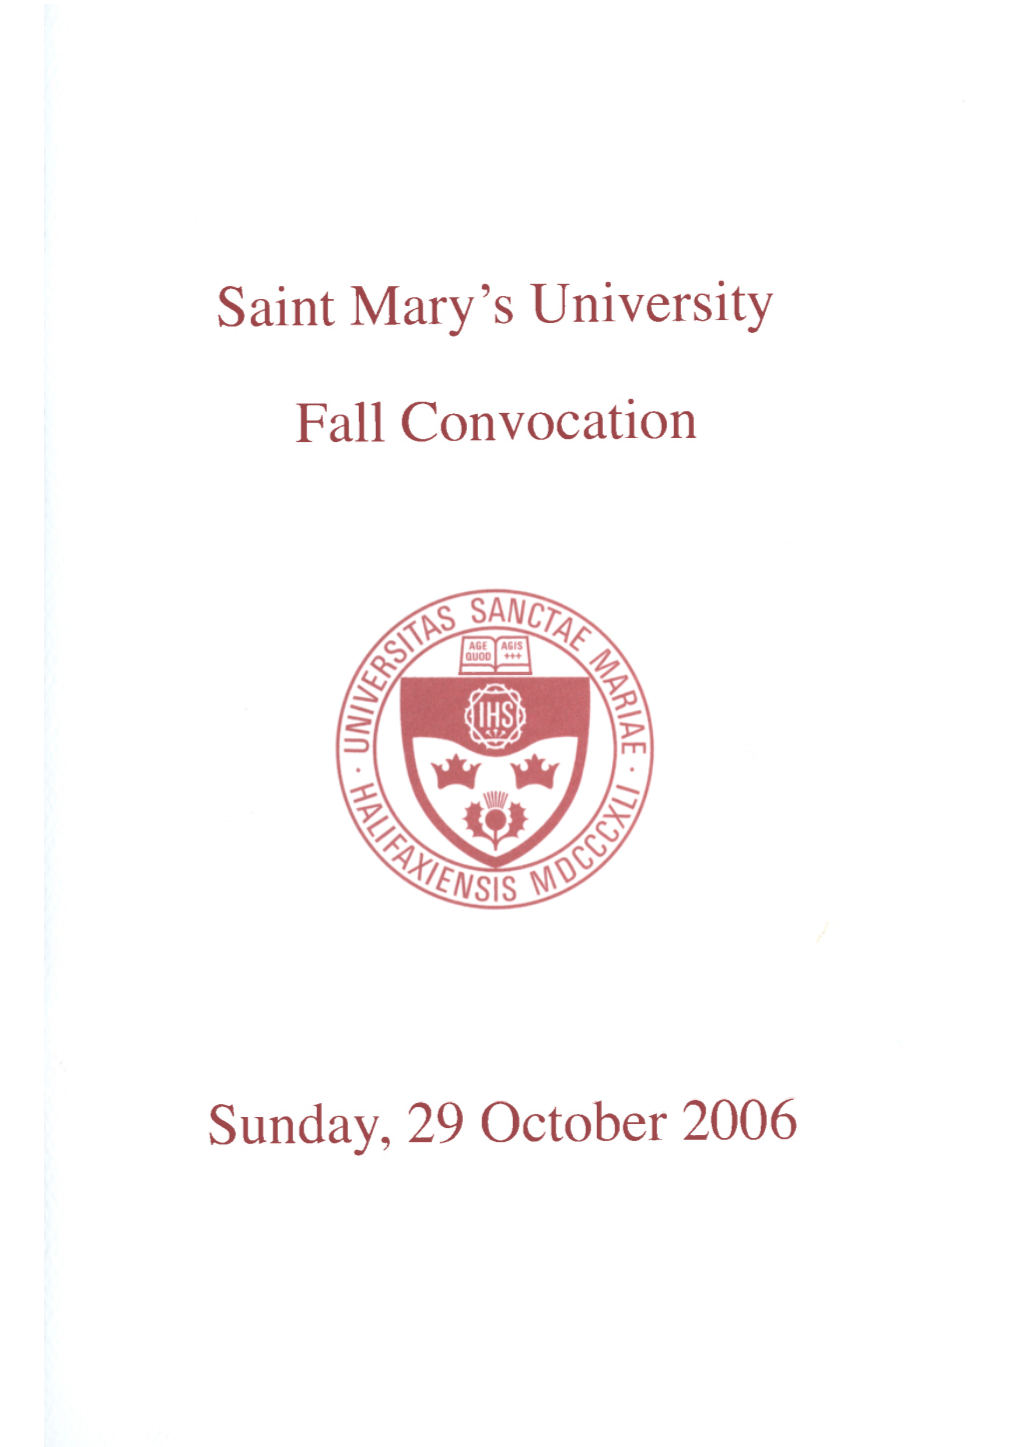 Saint Mary's University Fall Convocation Sunday, 29 October